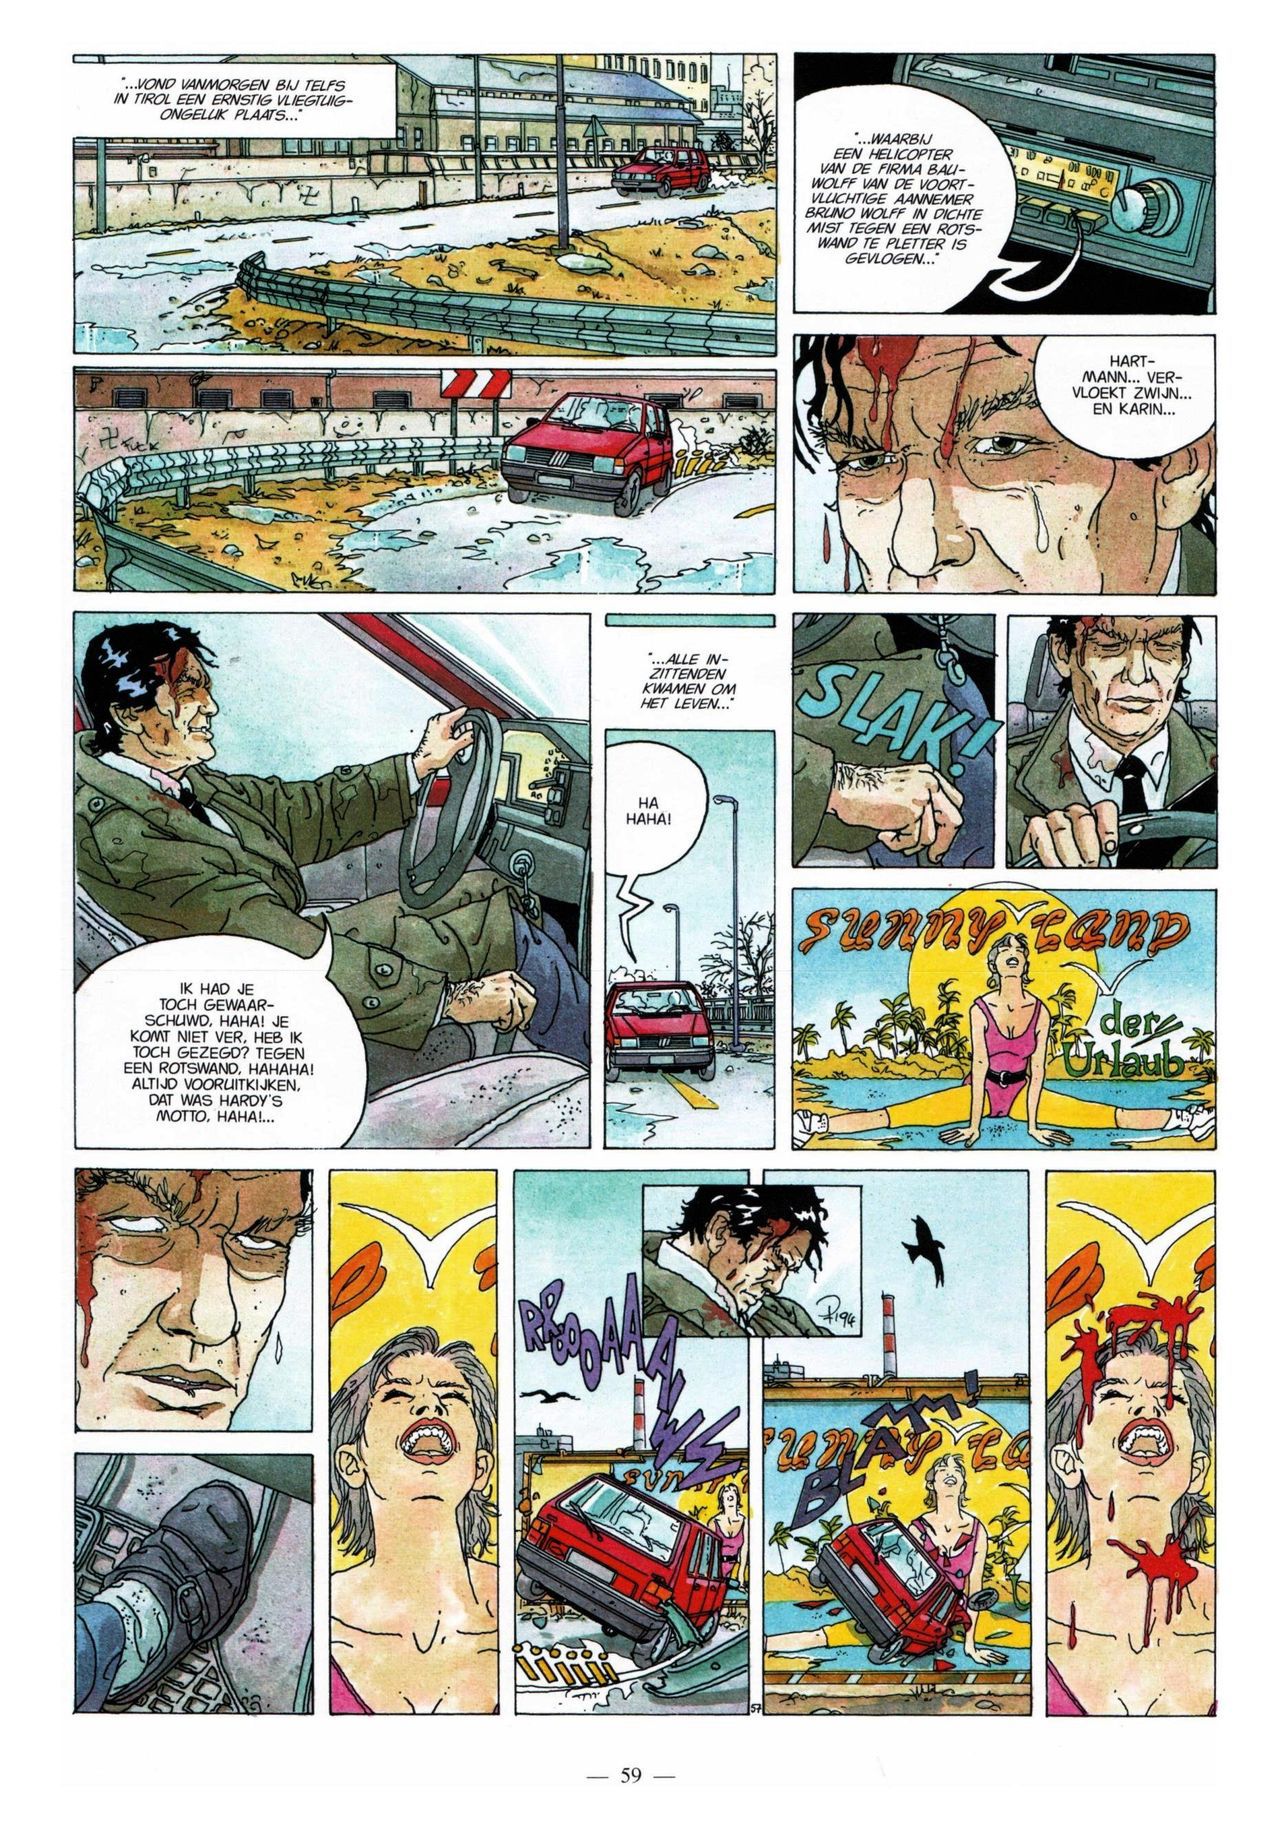 Anna Stein - 03 - De Laatste Alpengloed (Dutch) Engelstalige strips die op deze site staan, hier is de Nederlandse uitgave! 59